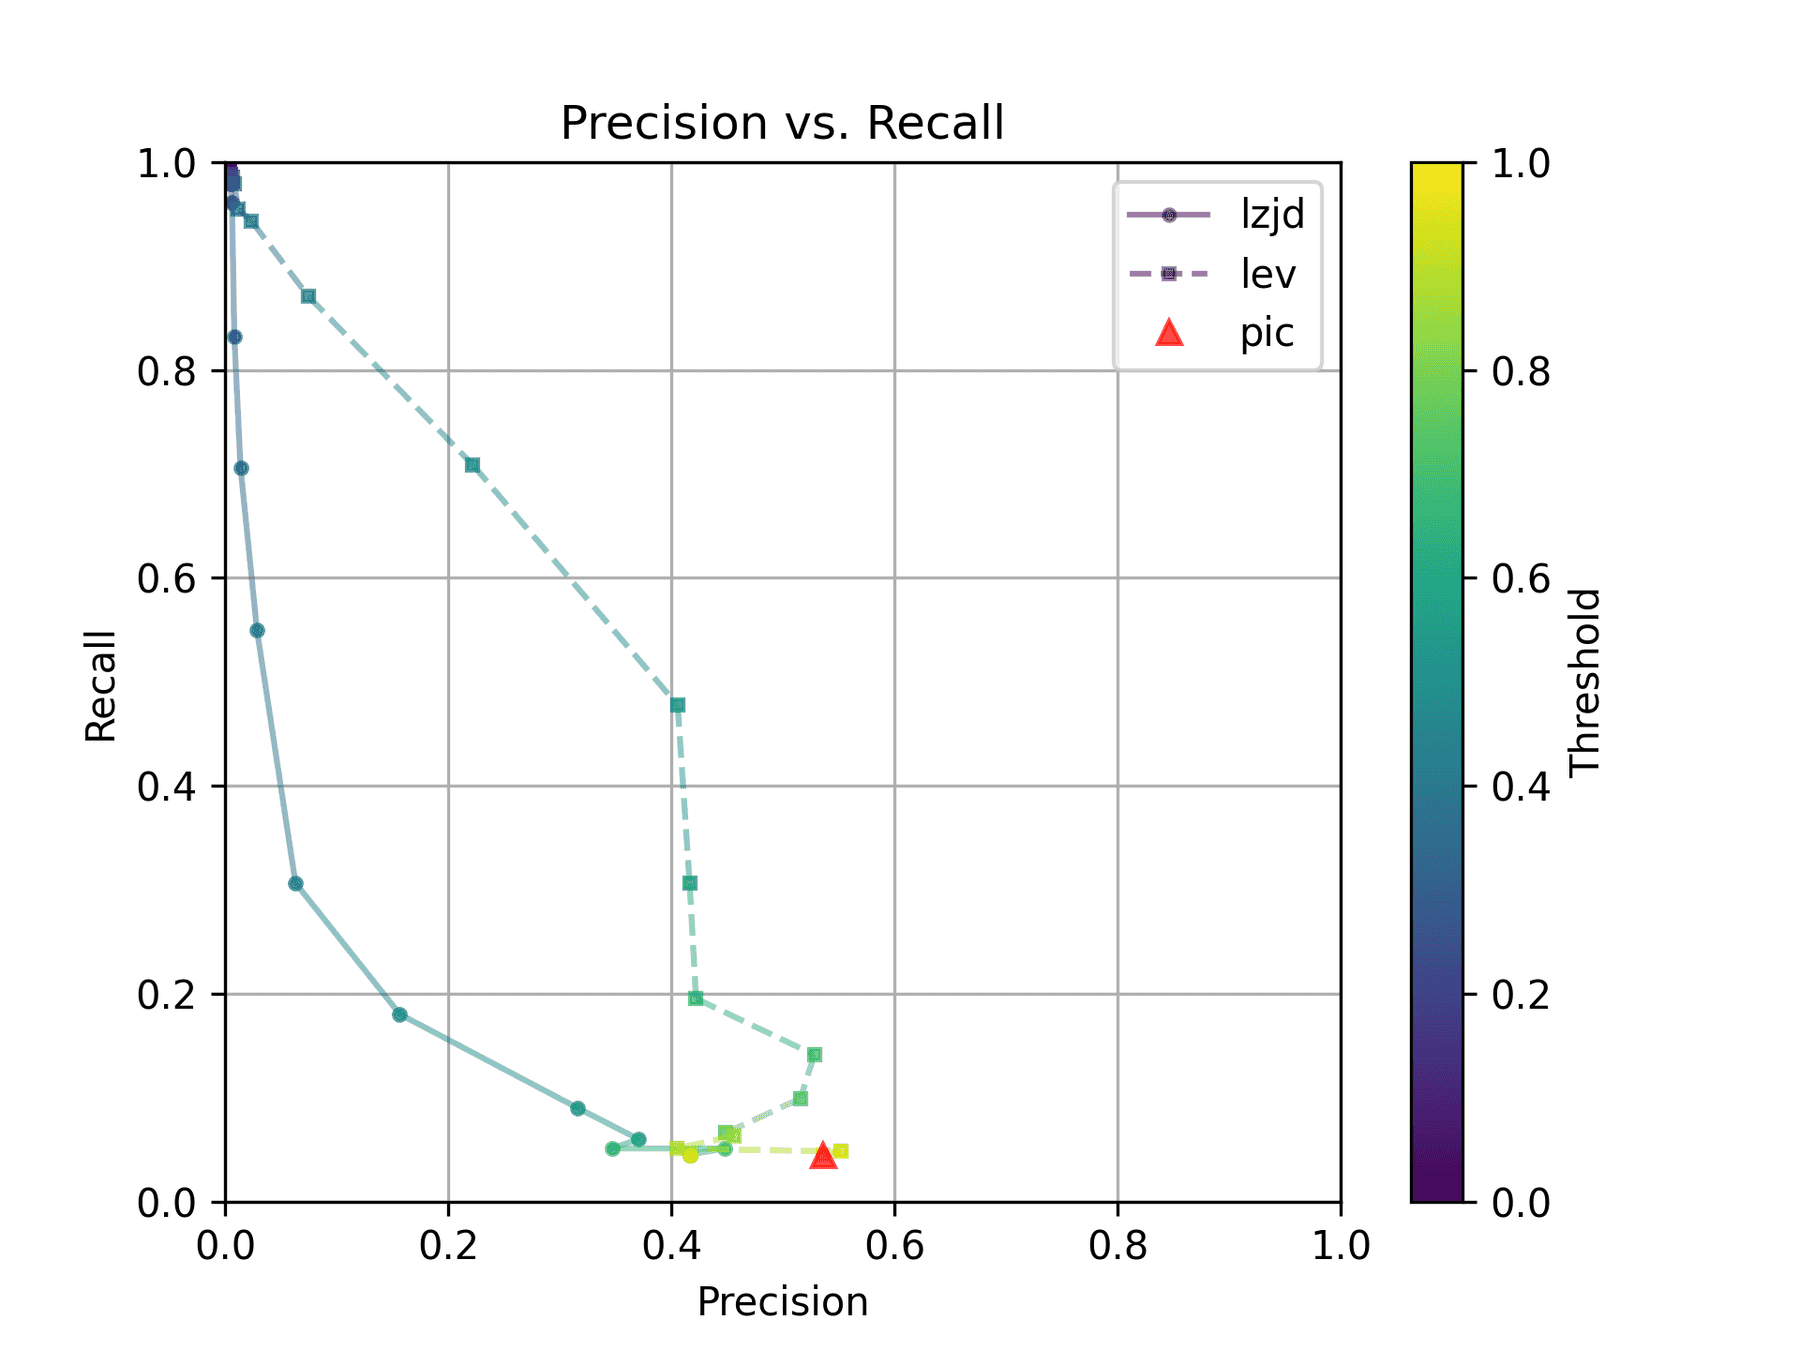 Precision vs. Recall plot for "openssl -O1 vs -O3"